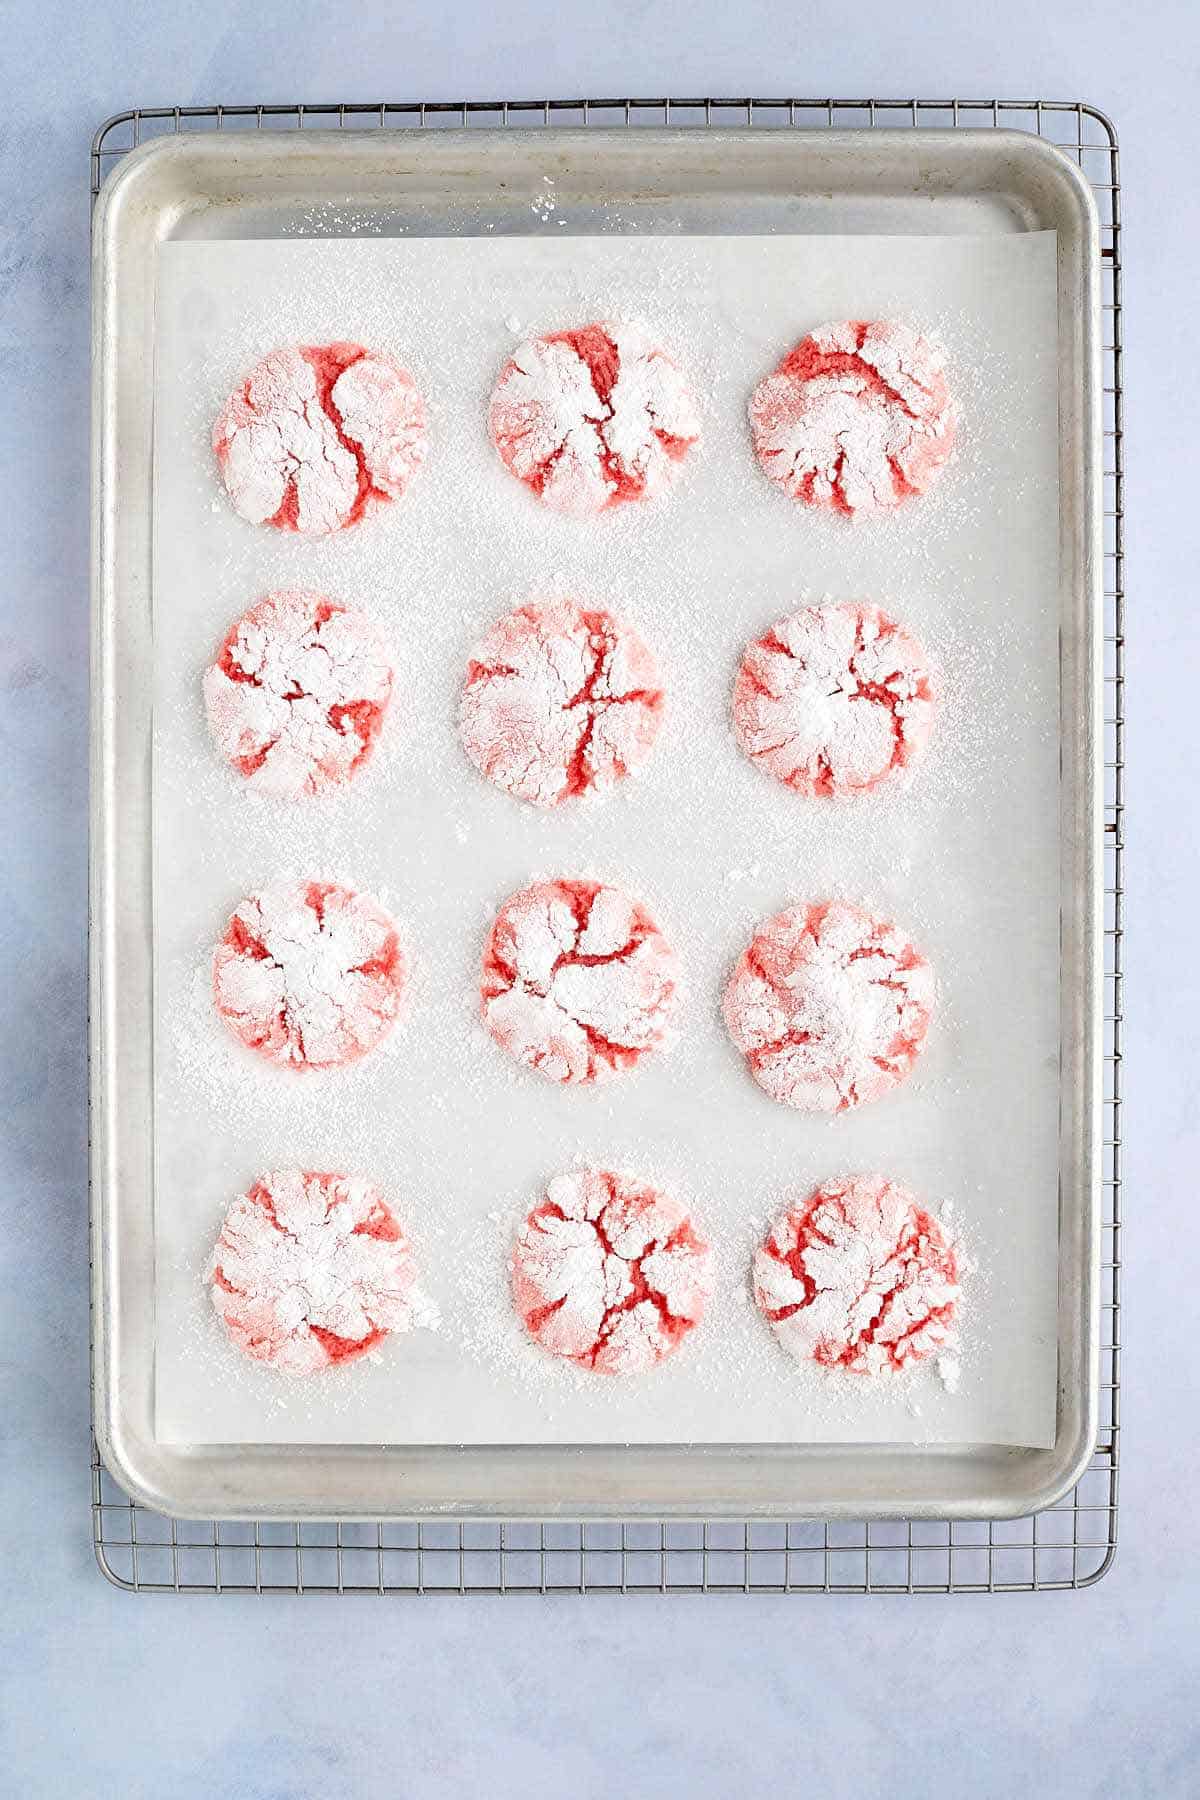 Cookie sheet of freshly baked strawberry crinkle cookies.